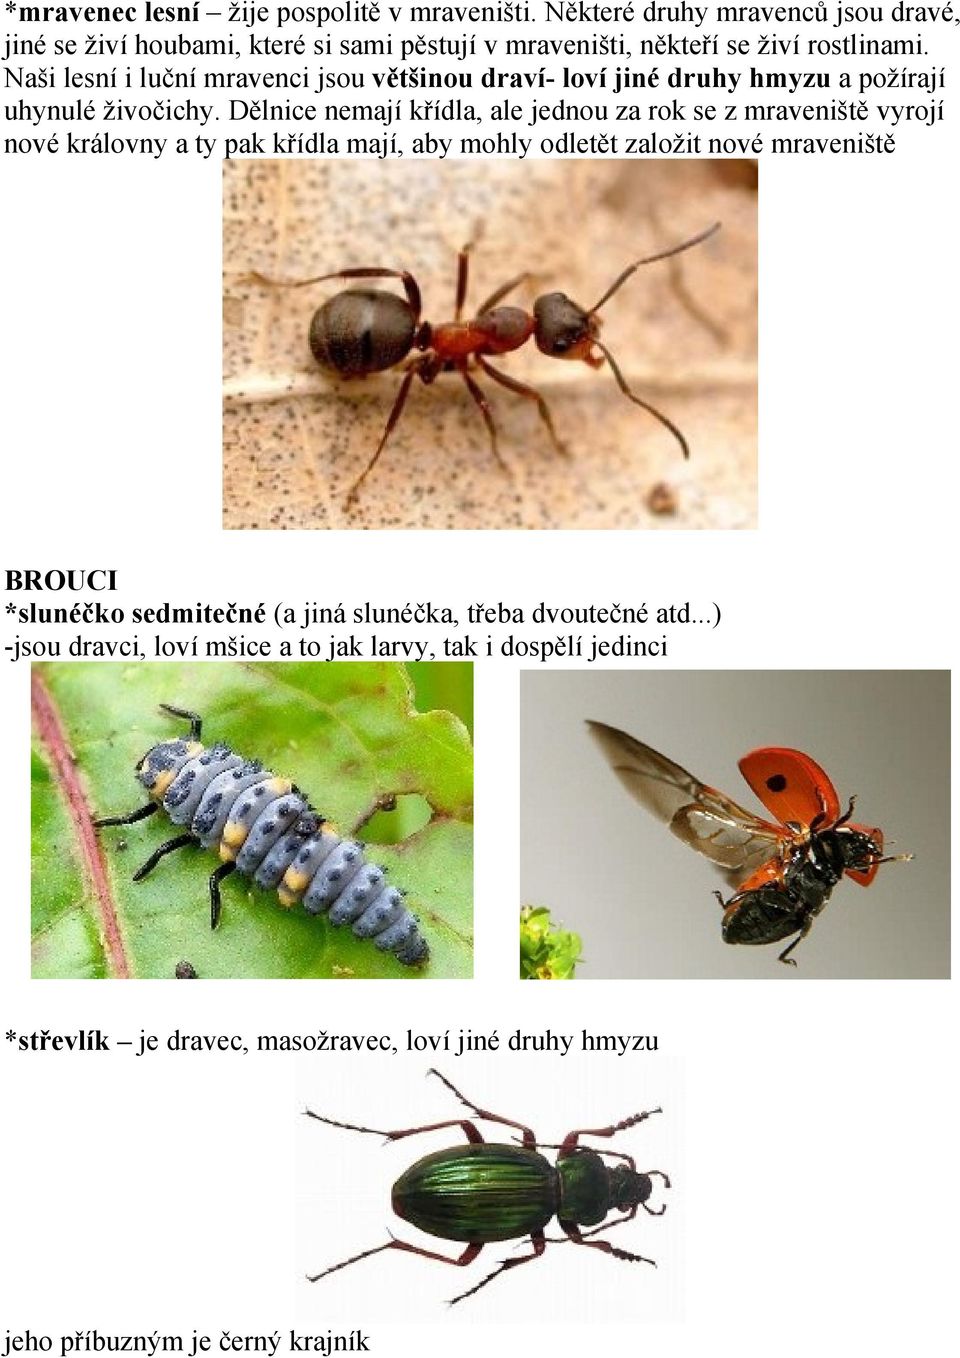 Naši lesní i luční mravenci jsou většinou draví- loví jiné druhy hmyzu a požírají uhynulé živočichy.